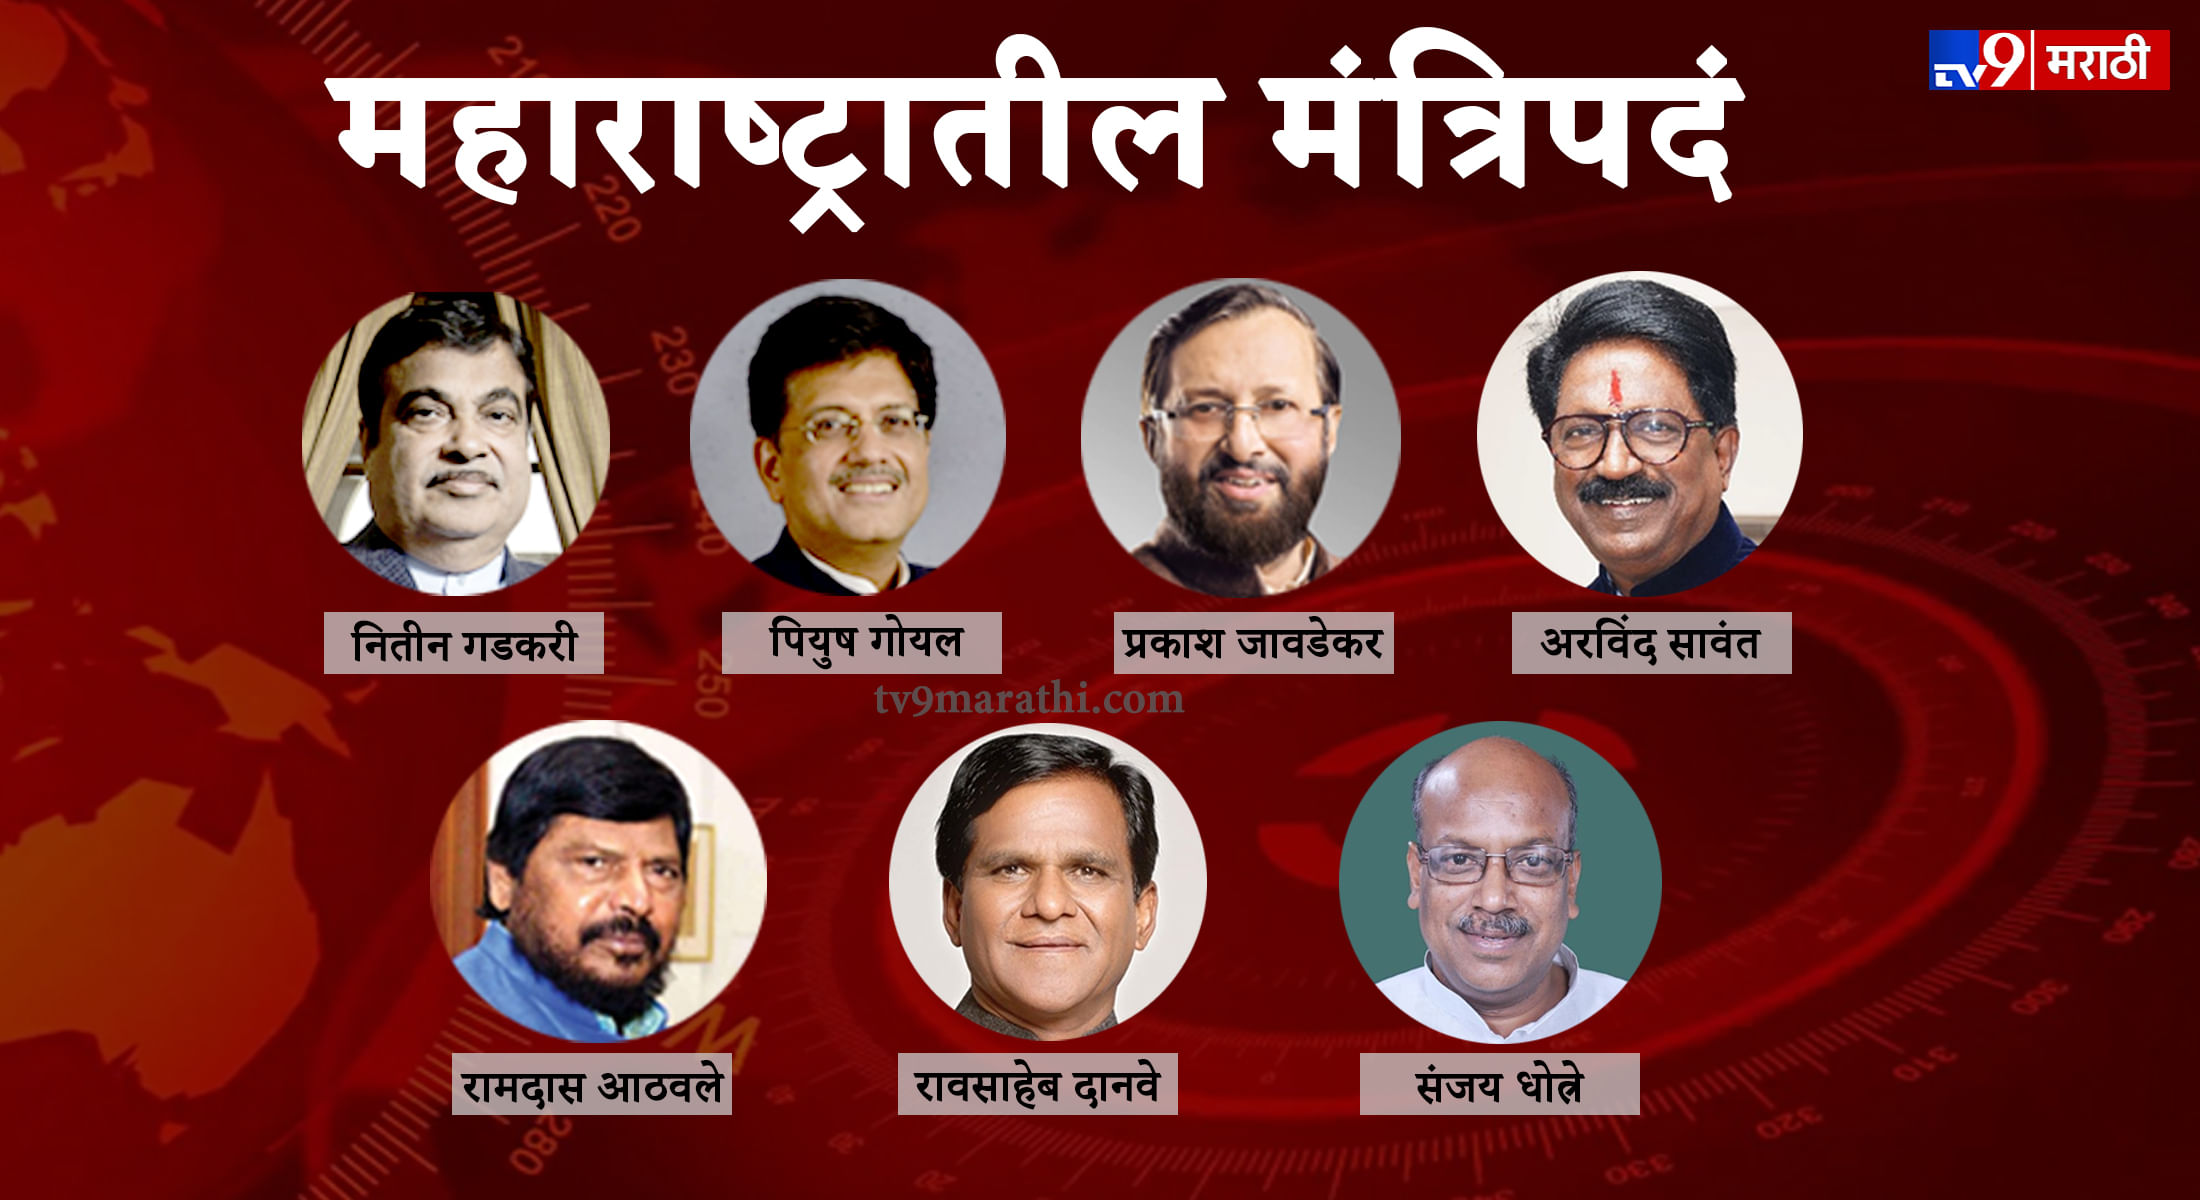 महाराष्ट्रातील 7 मंत्र्यांकडे कोणतं मंत्रालय? Marathi News List of